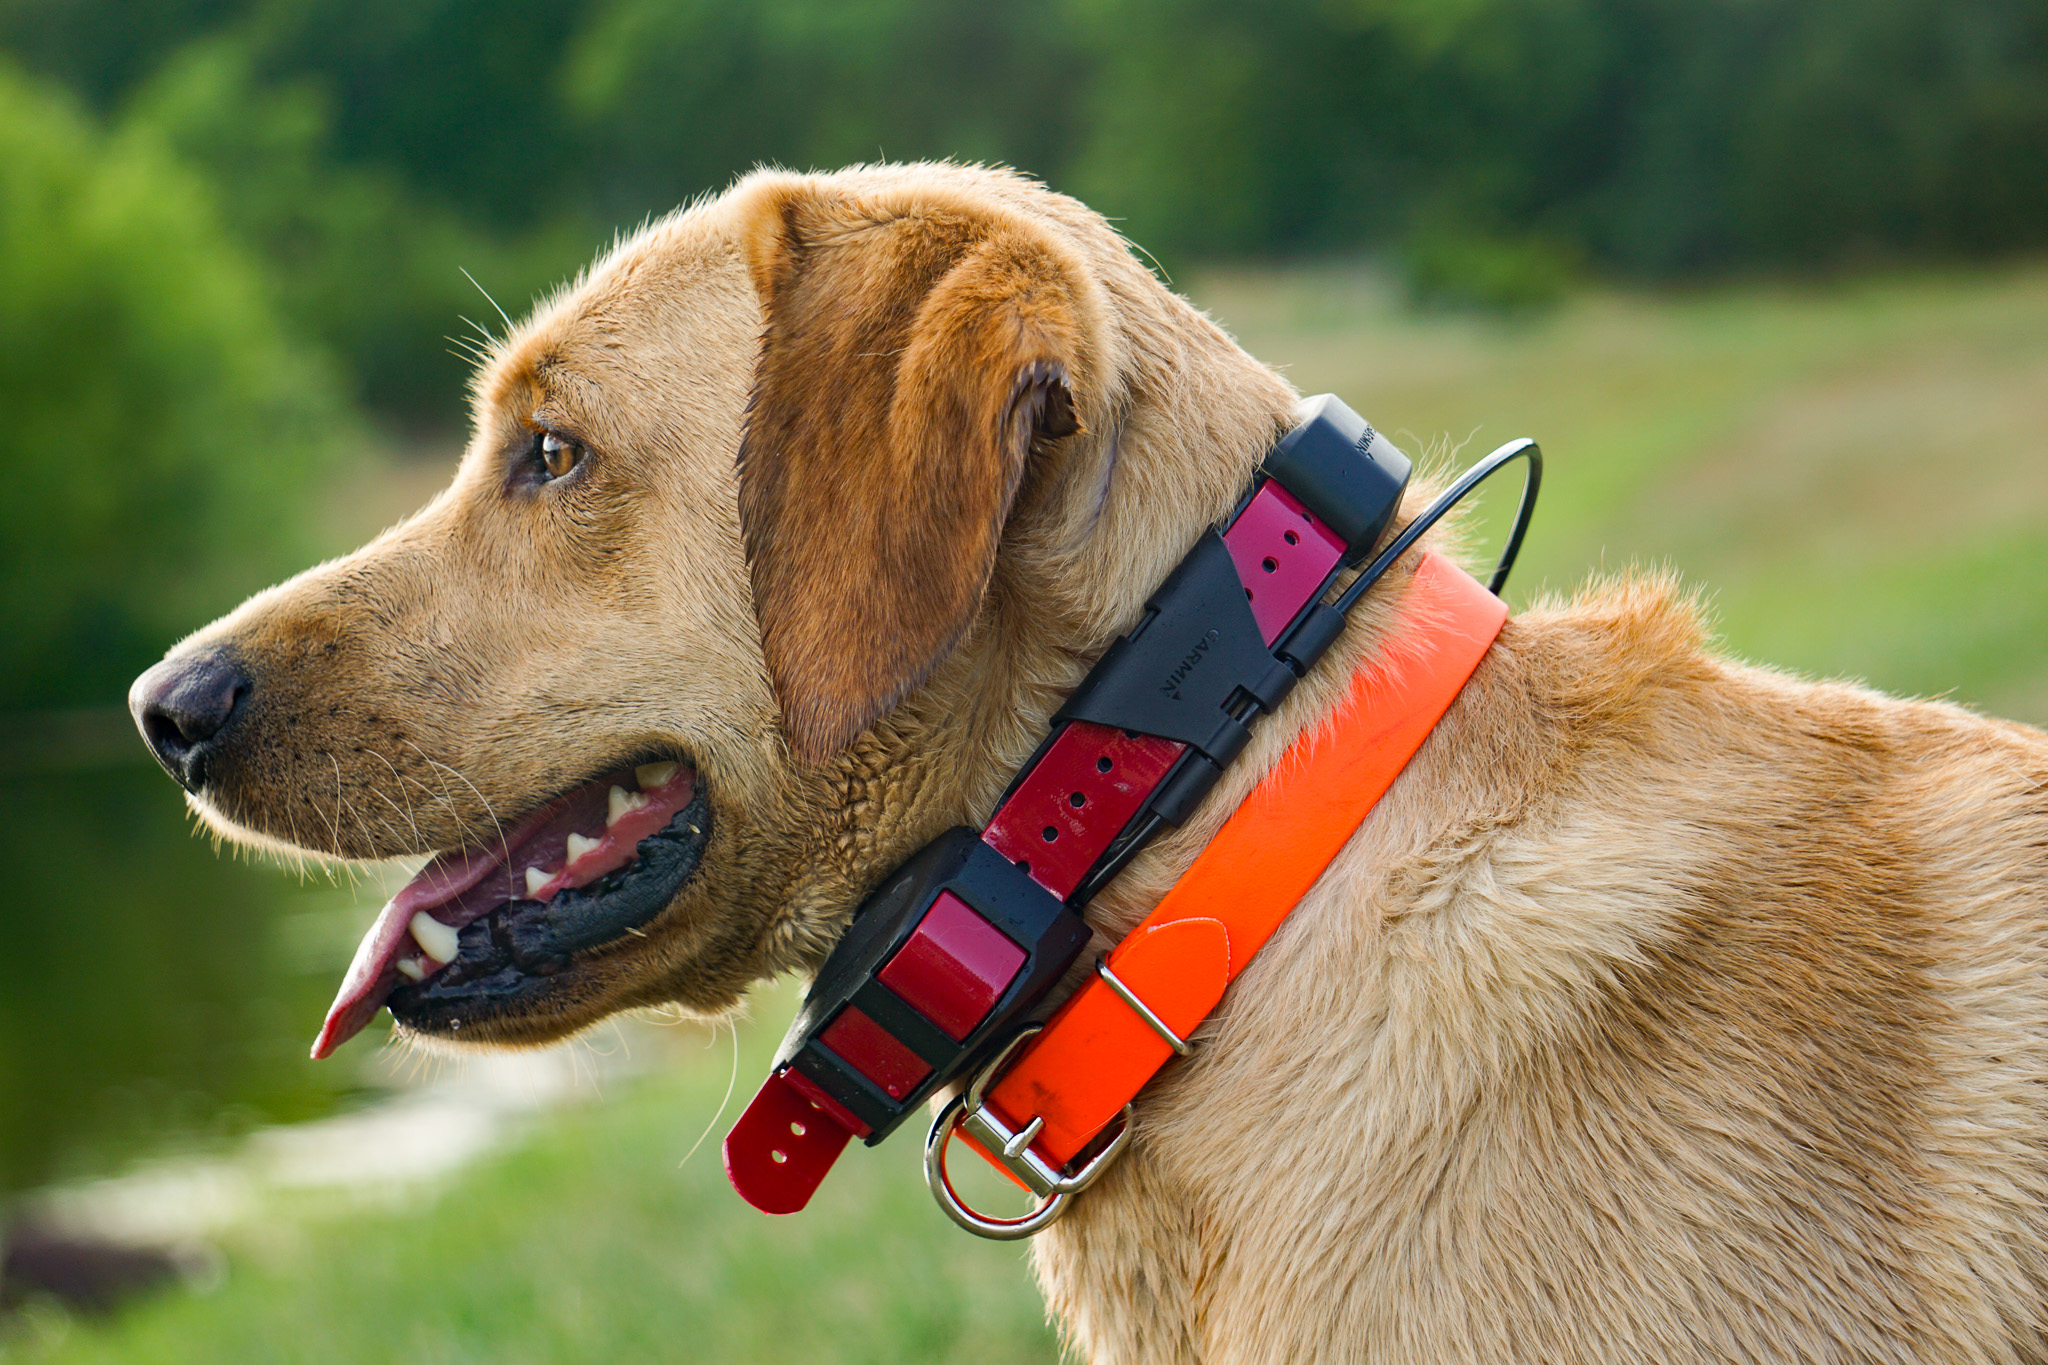 A dog wearing a gps collar.